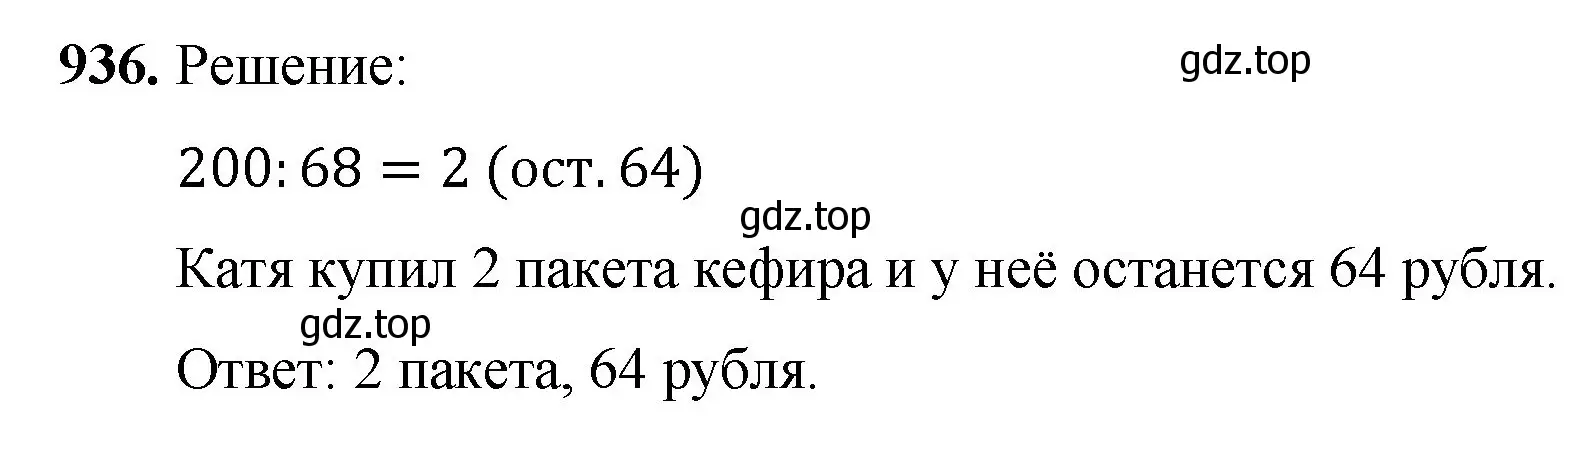 Решение номер 936 (страница 212) гдз по математике 5 класс Мерзляк, Полонский, учебник